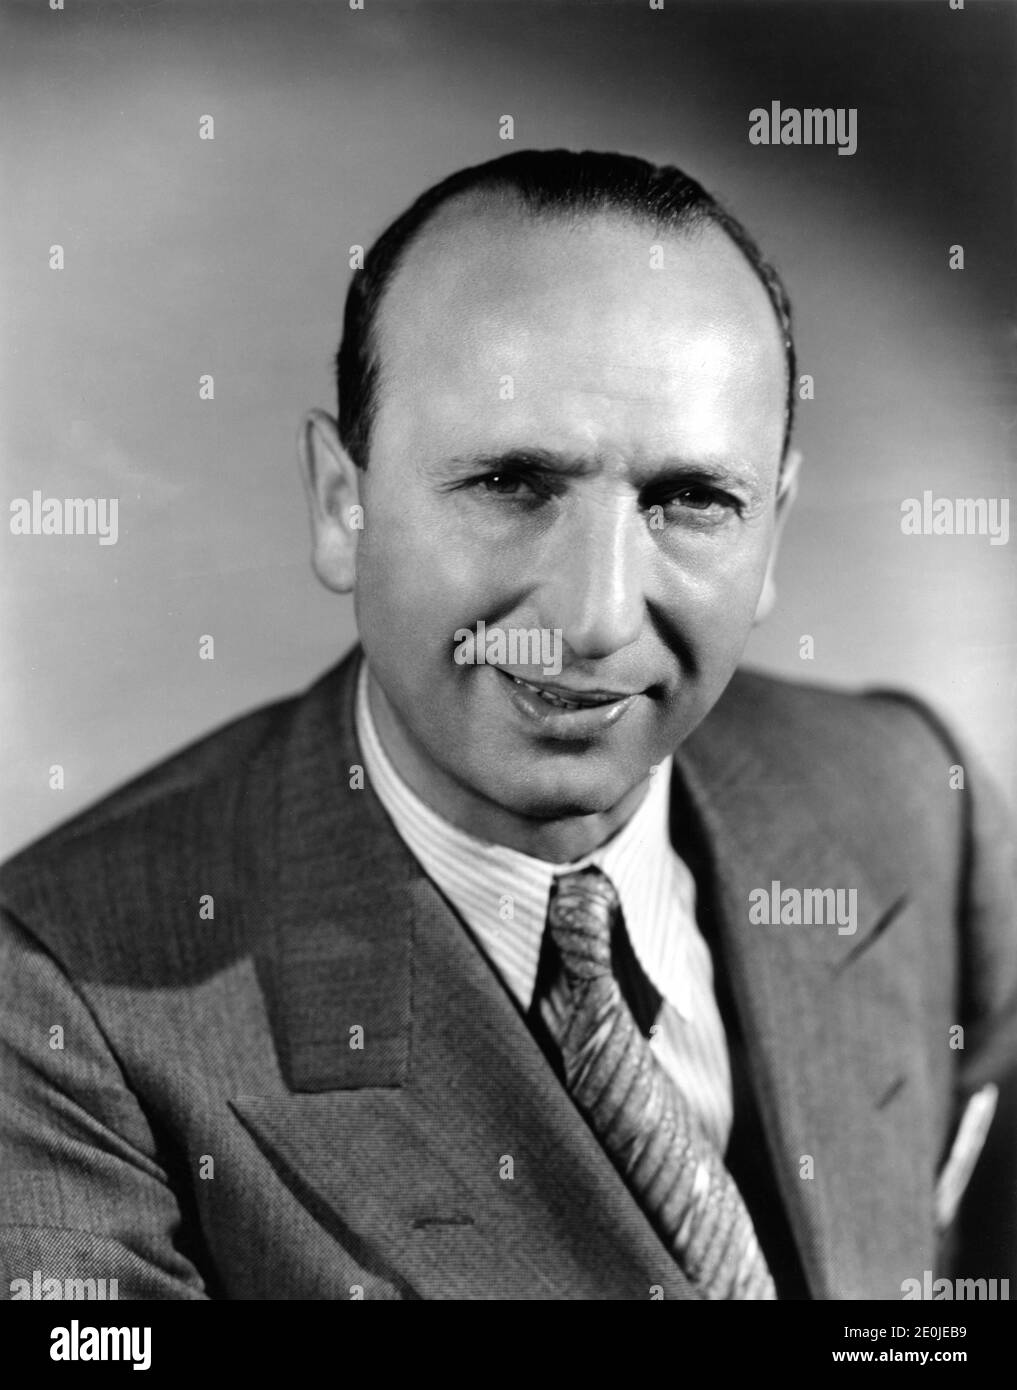 Ungarischer Regisseur MICHAEL CURTIZ 1935 Portrait von ELMER FRYER Publicity für Warner Bros. Stockfoto